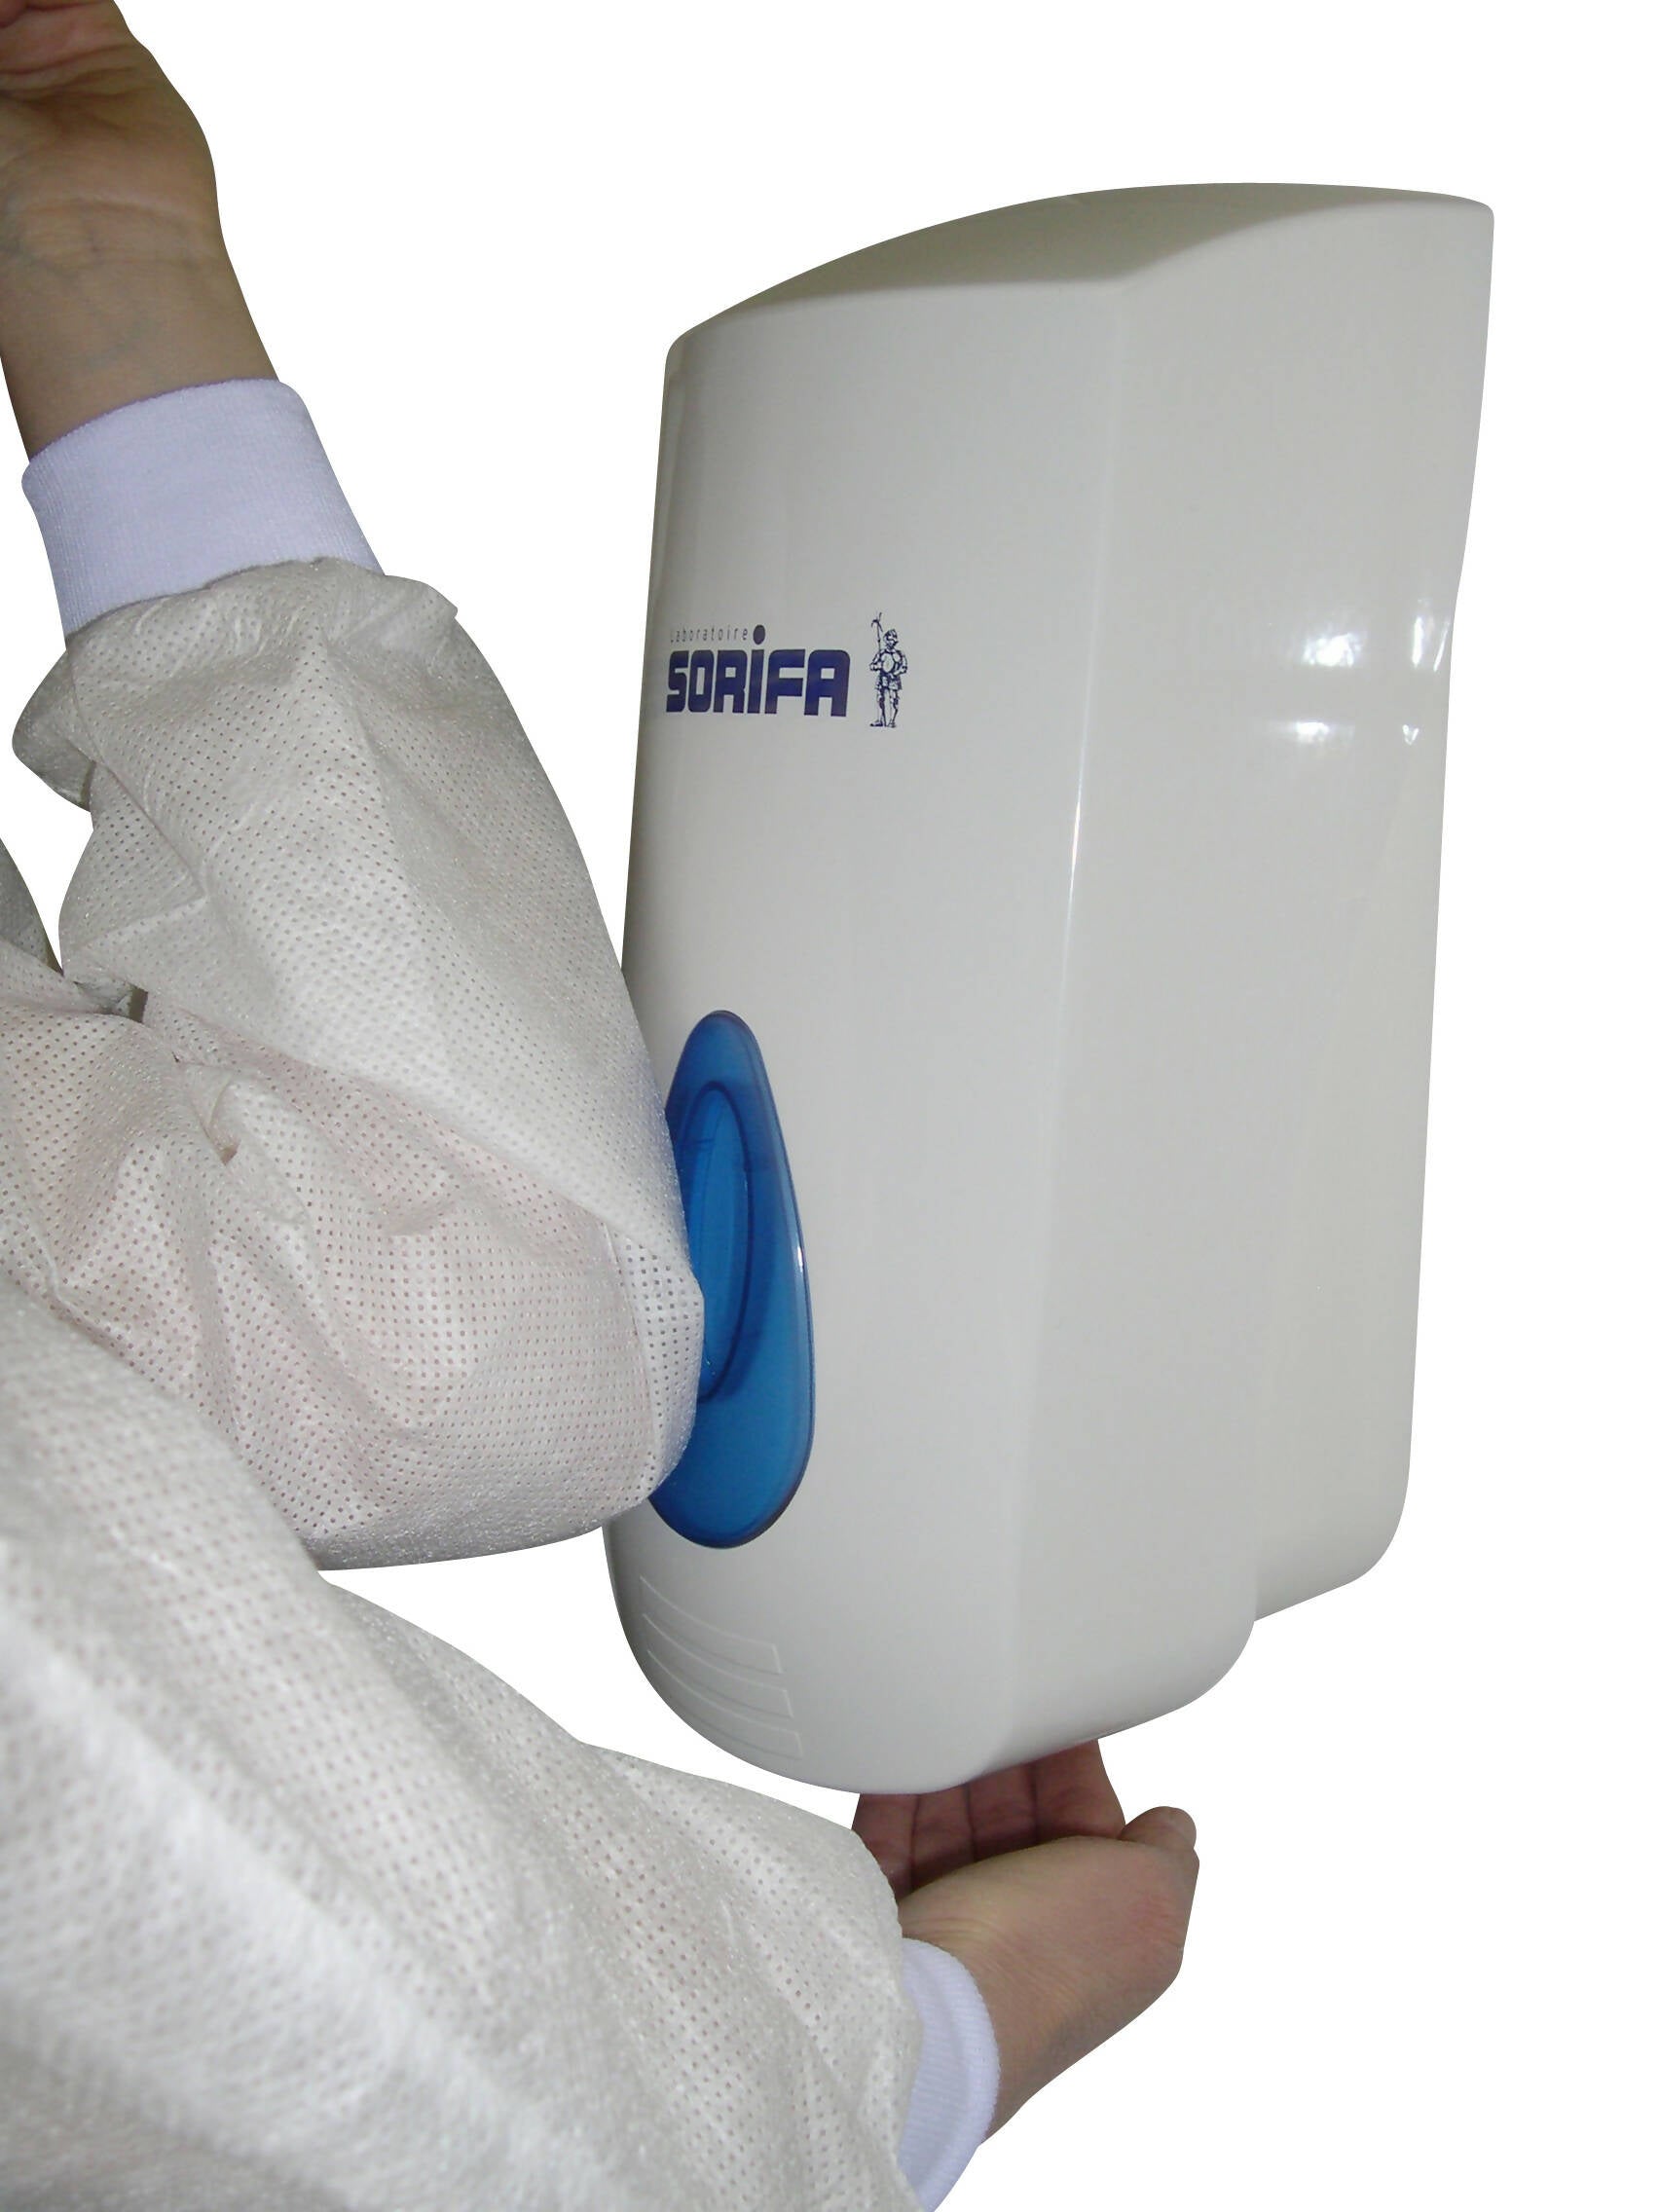 SORIFA – Robuster, ergonomischer, abschließbarer Wandspender aus Metall für 1L-Flasche der Marke SORIFA – Für Gele und Flüssigseifen.